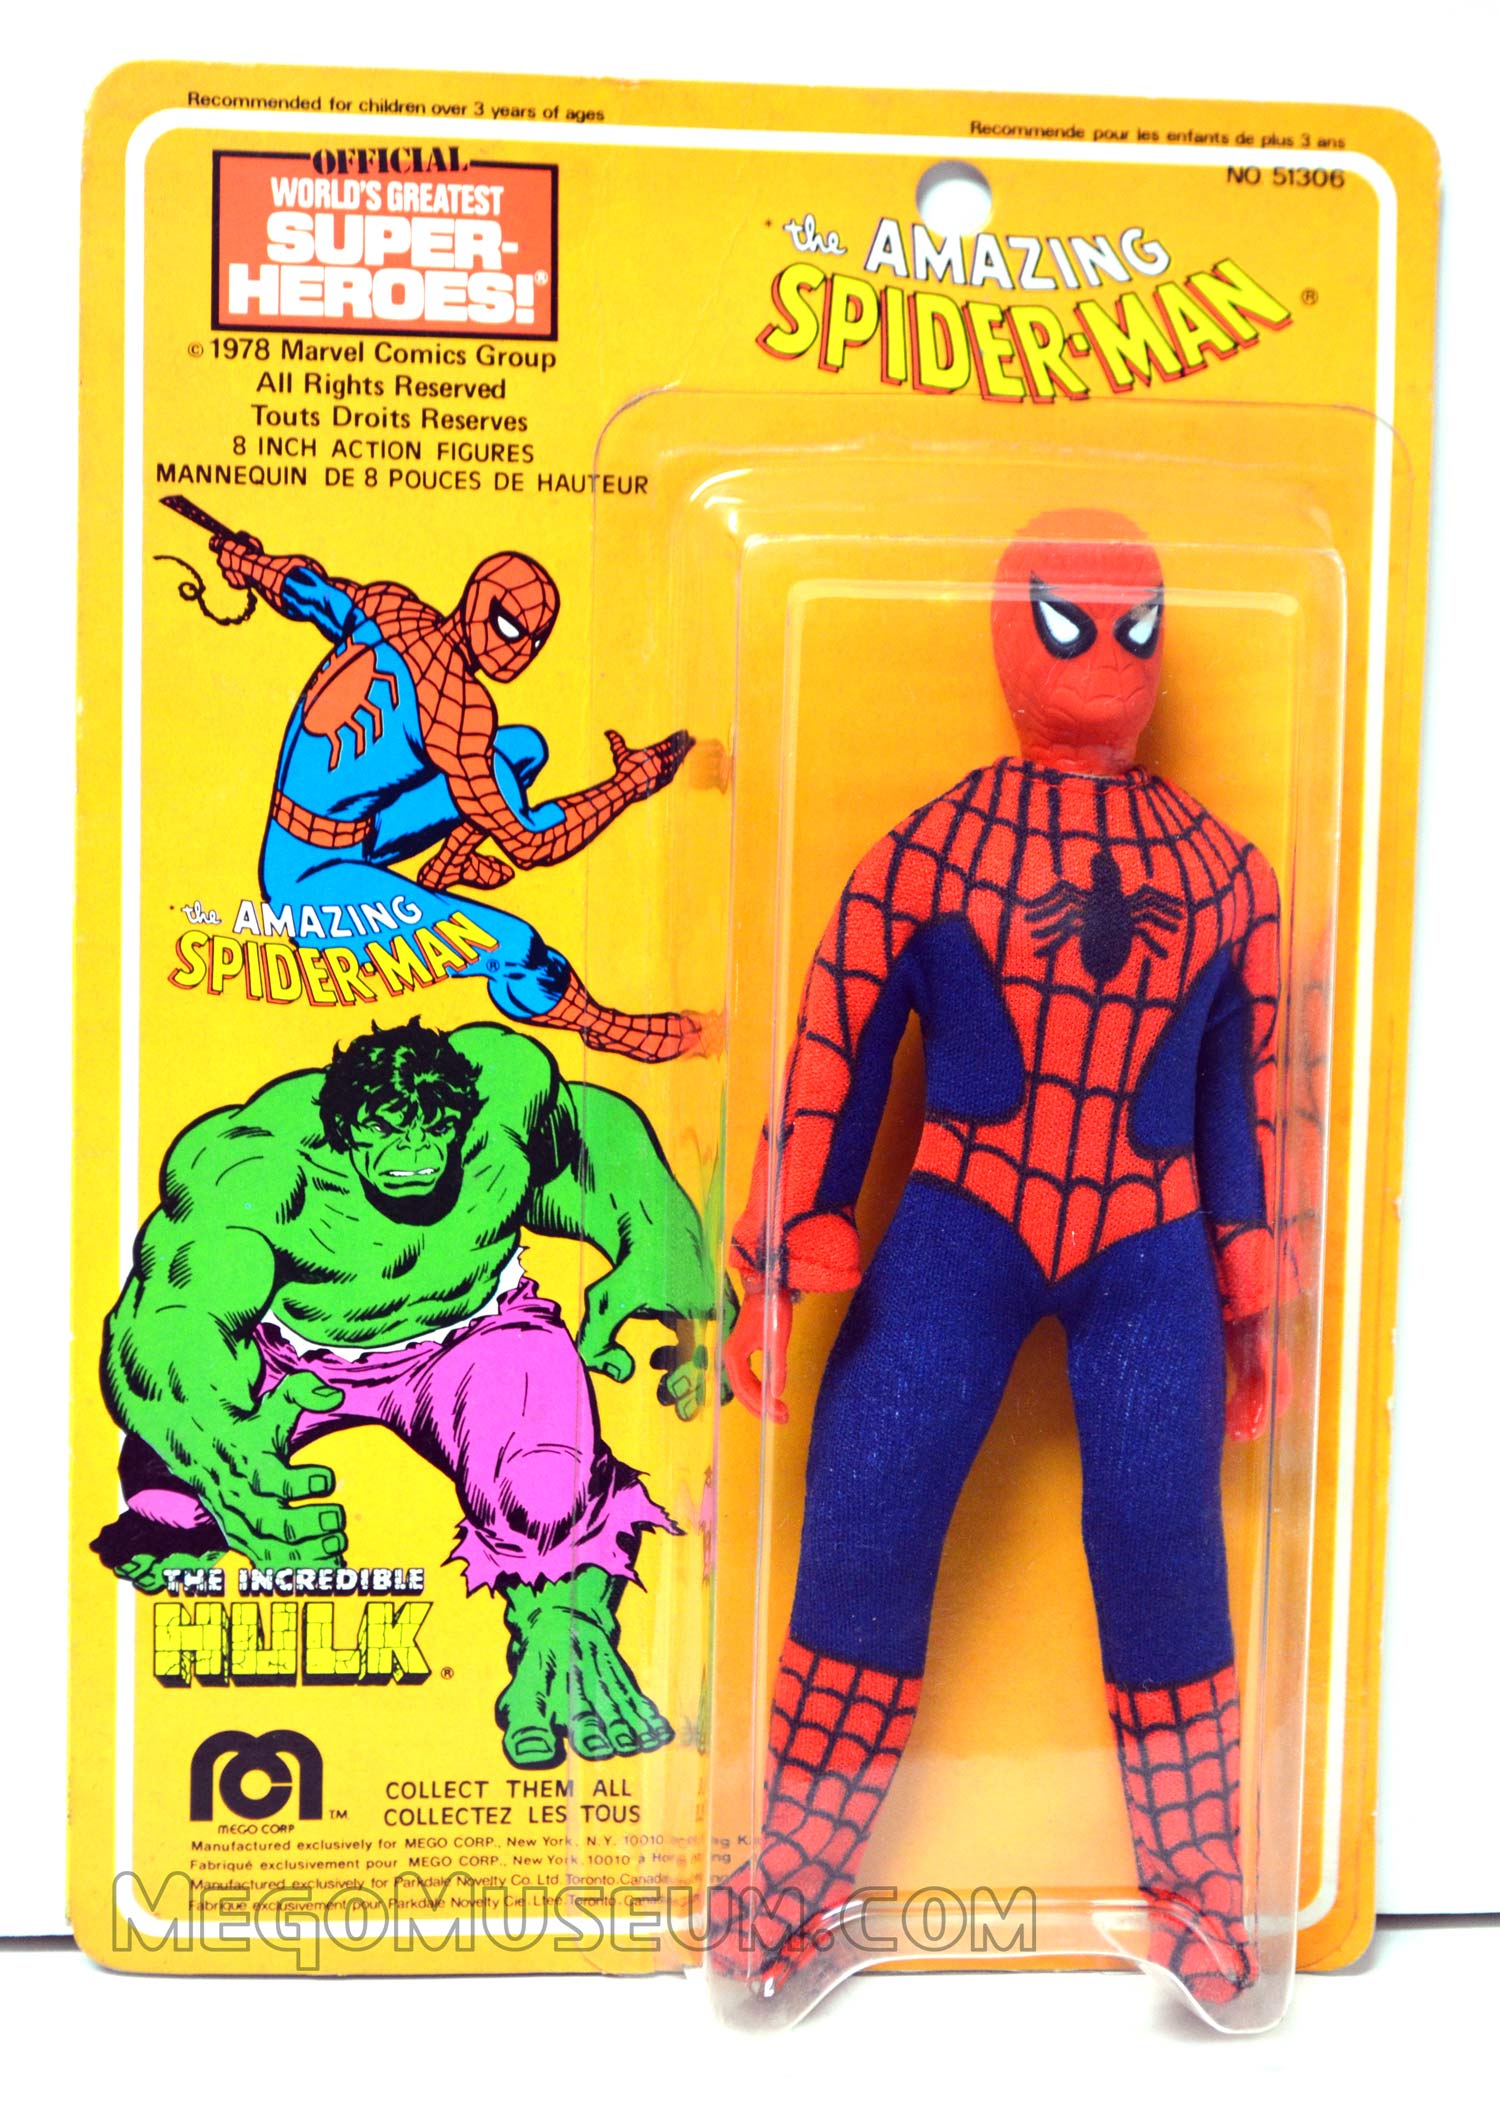 Mego Spiderman on Parkdale Novelty Card